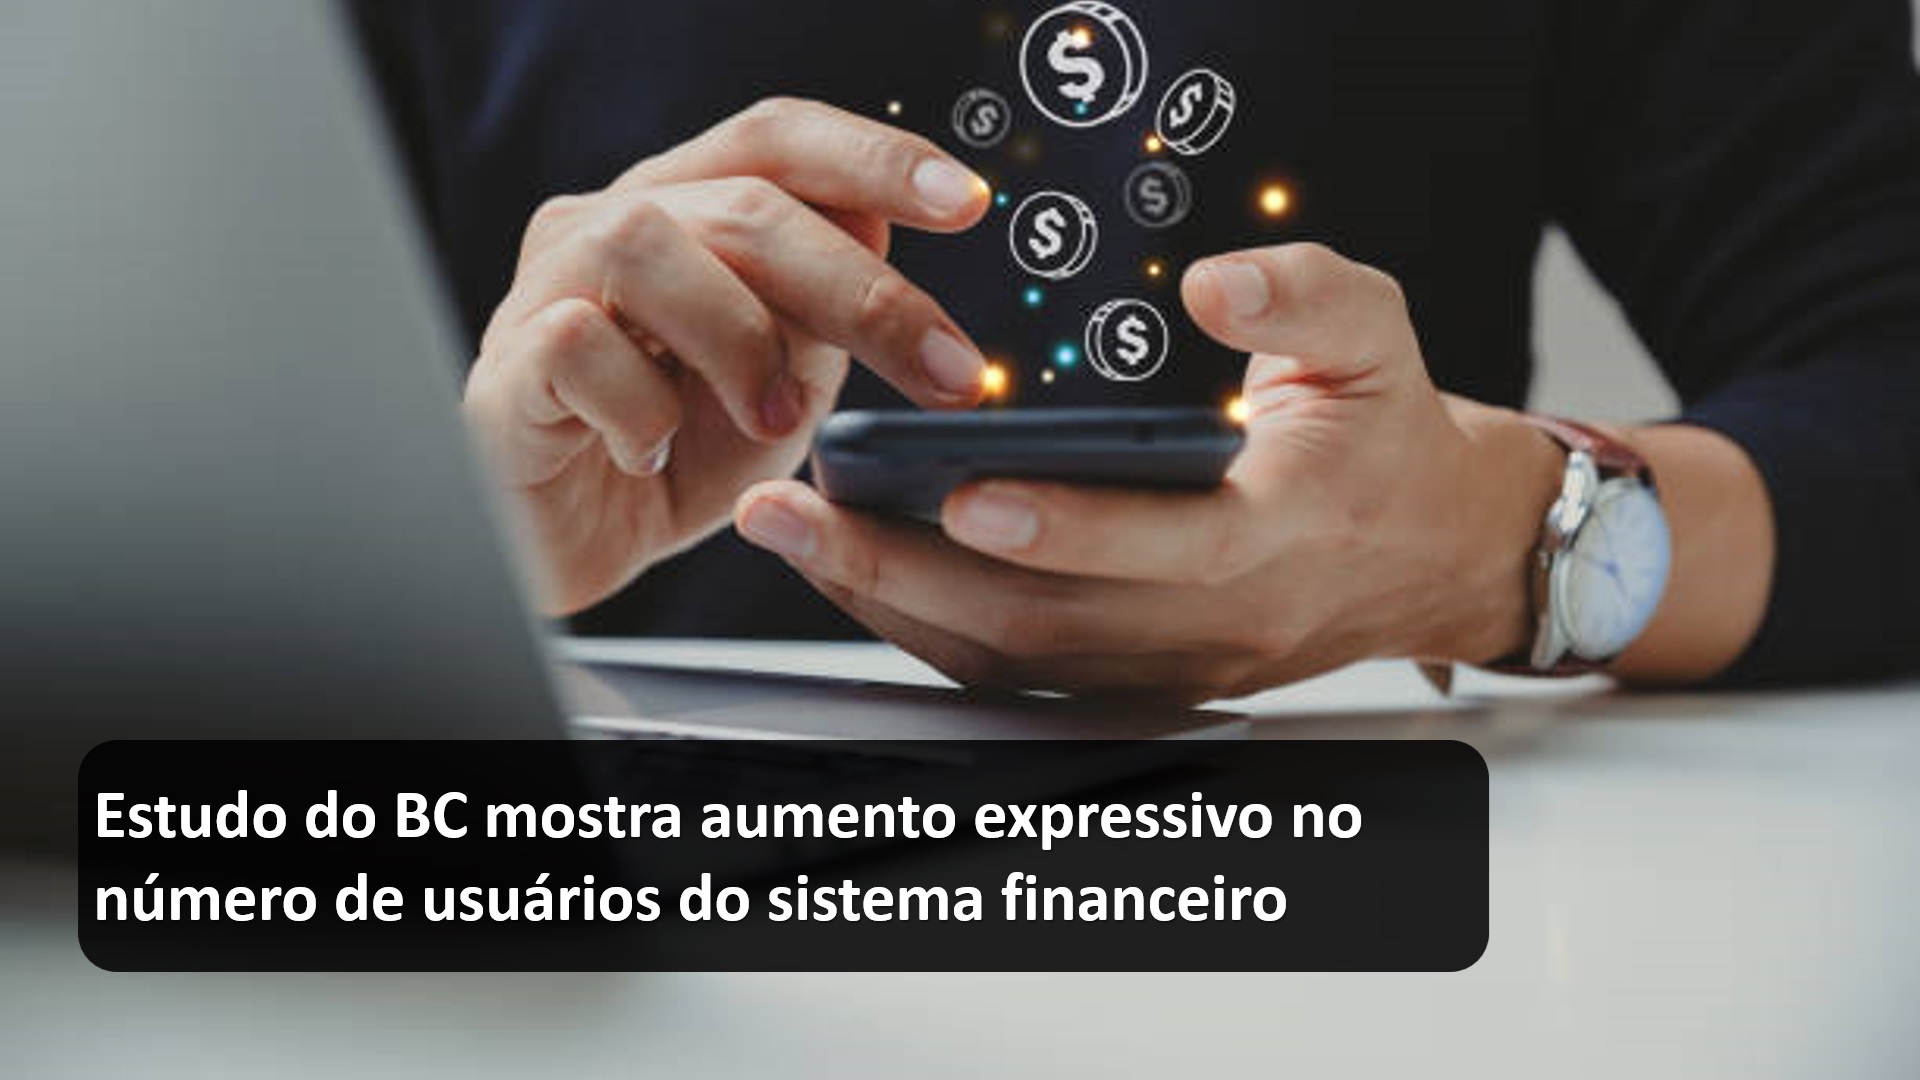 Estudo do BC mostra aumento expressivo no número de usuários do sistema financeiro.jpg